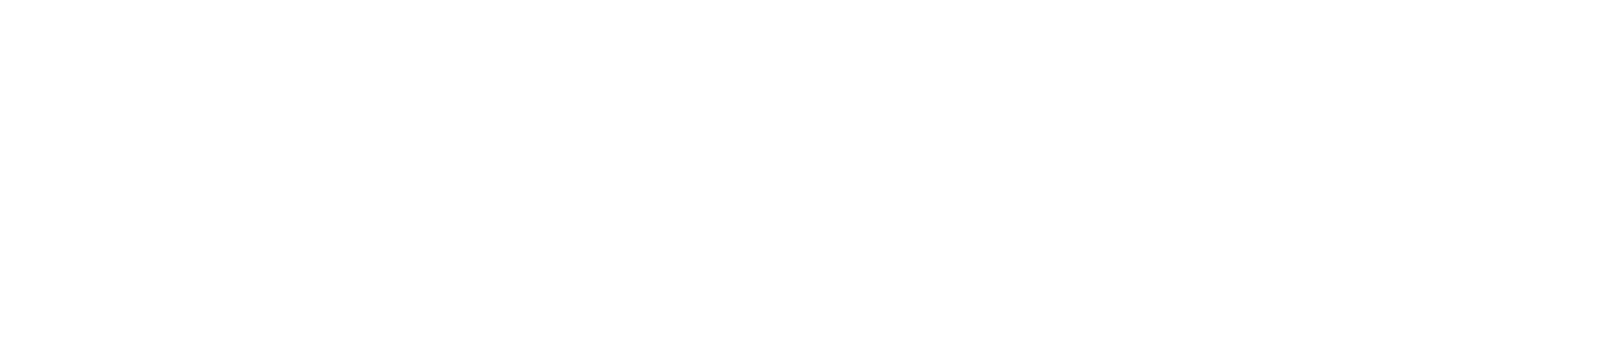 Dr. Reddy's logo large for dark backgrounds (transparent PNG)